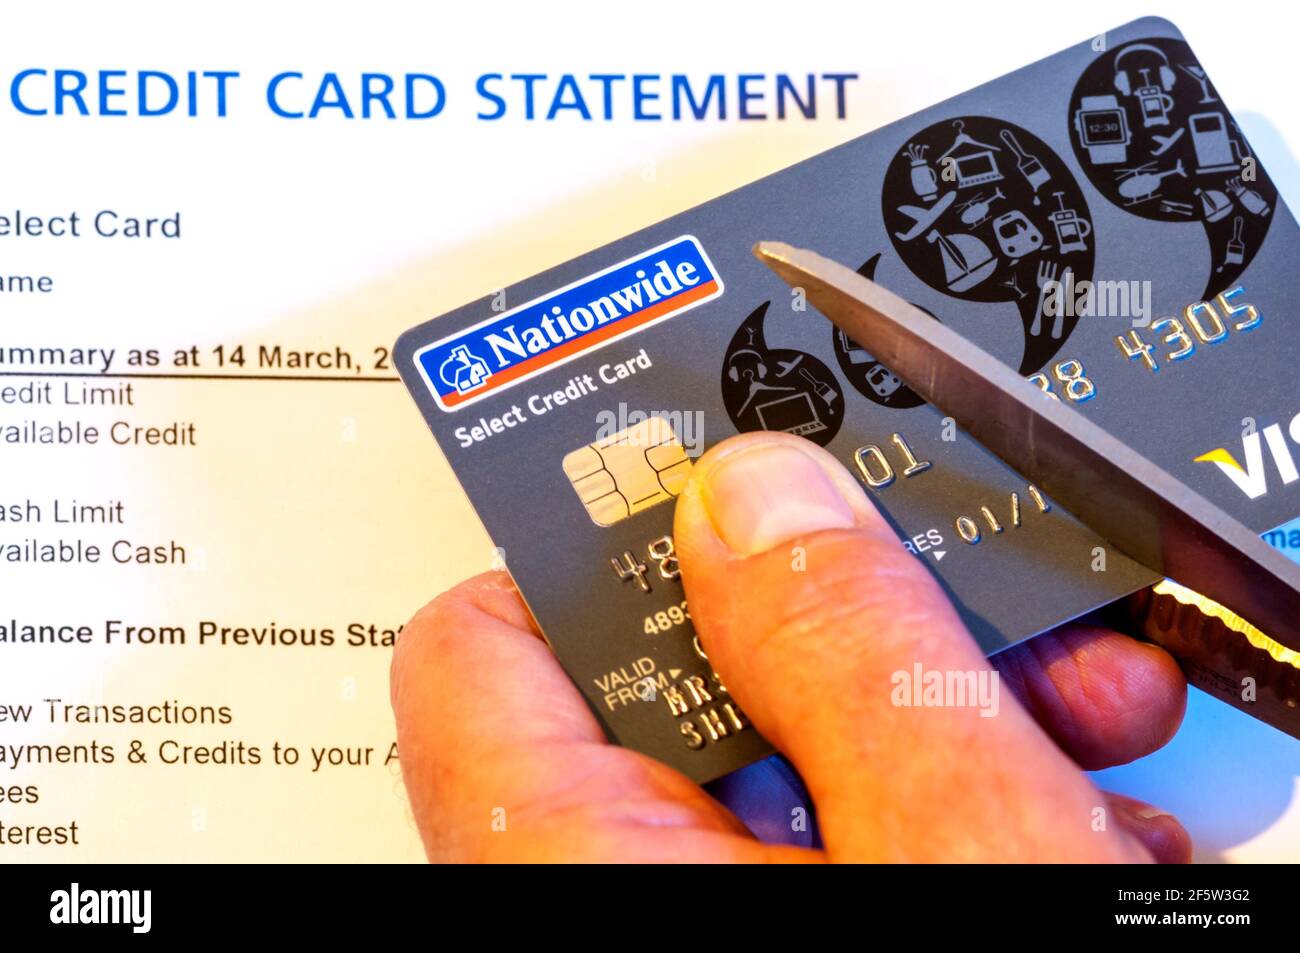 Dichiarazione della carta di credito con la mano tagliando la carta, sia per evitare il debito o prevenire il furto di identità. Foto Stock